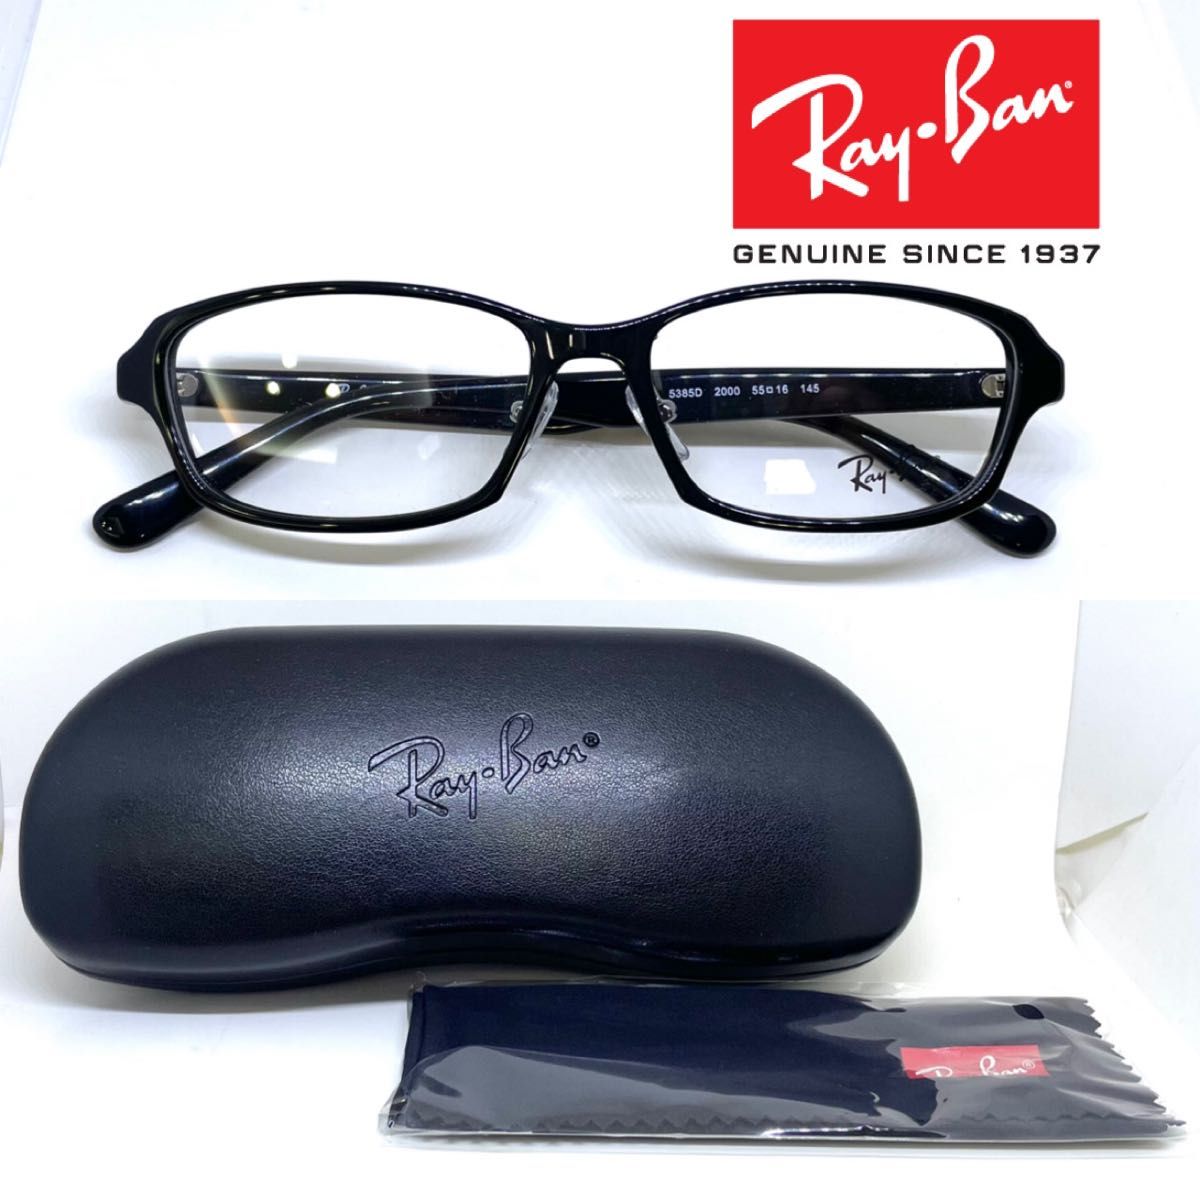 新品 Ray Ban レイバン メガネ フレーム RB5385D RX5385D 2000 ブラック  メガネ メガネフレーム